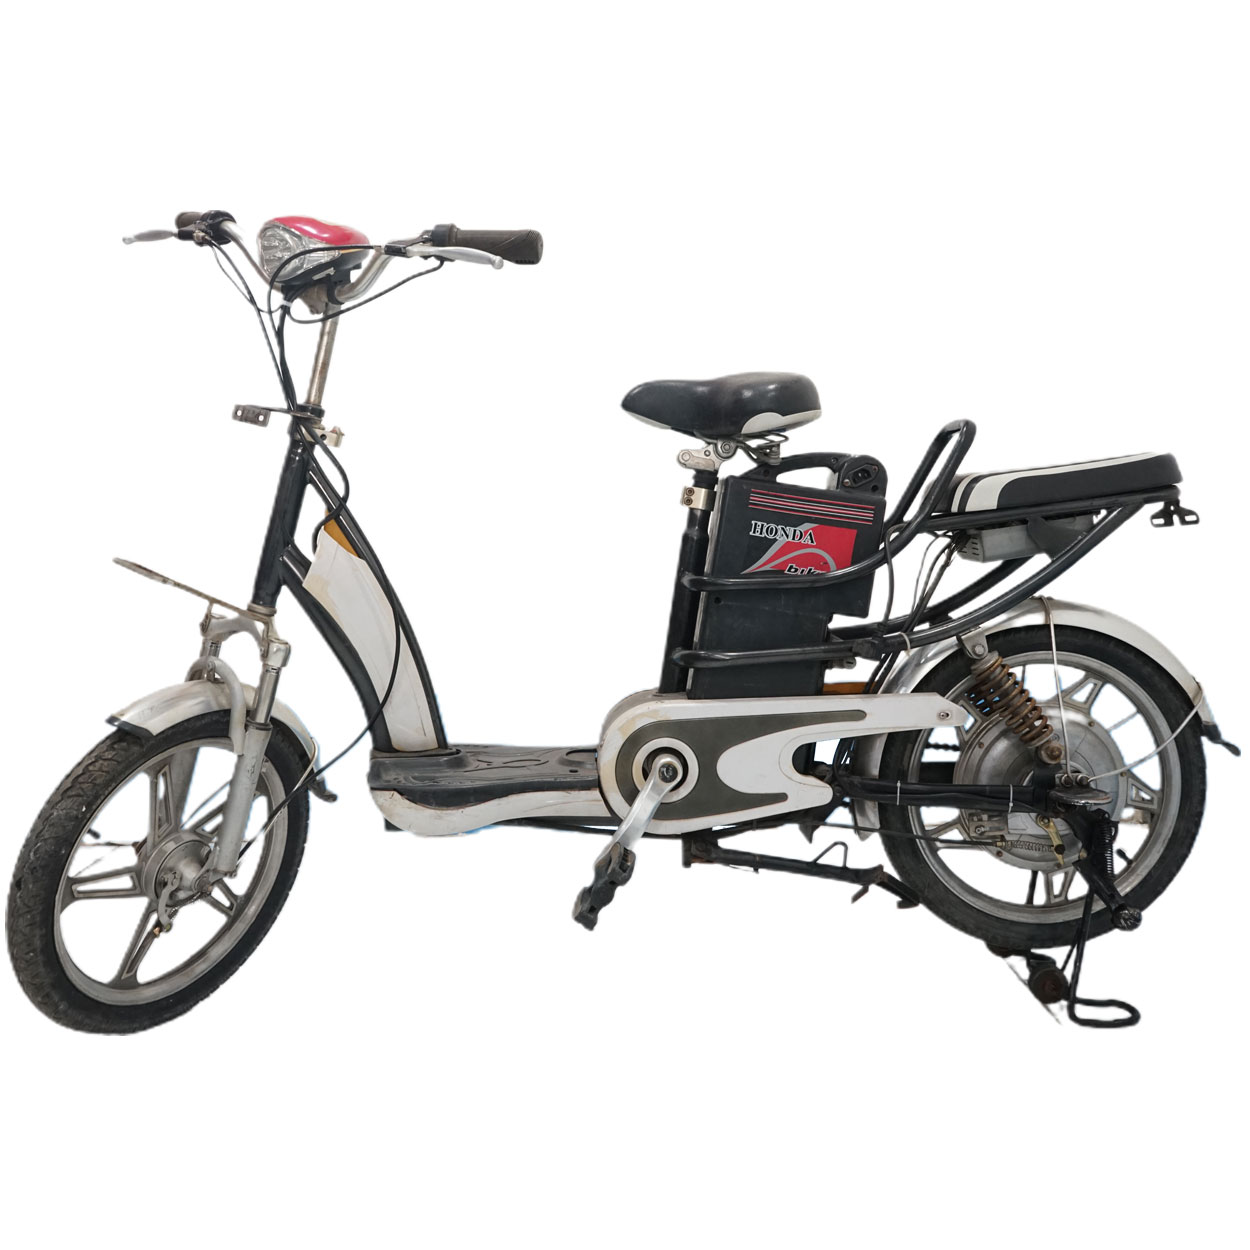 Xe đạp điện Honda Bike cũ giá rẻ 20